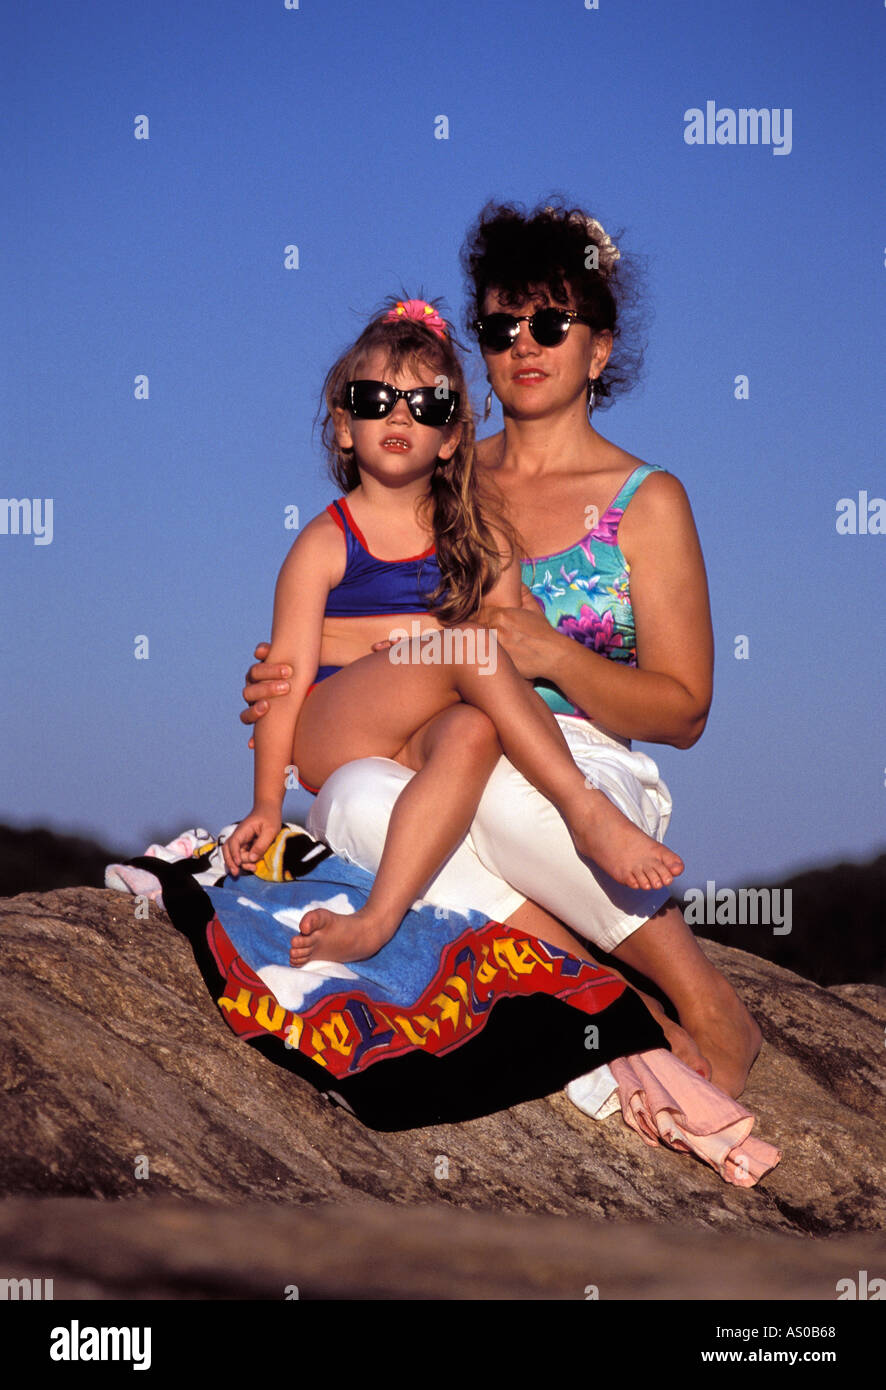 Madre e hija con gafas de sol sentado sobre una roca, Connecticut, EE.UU. Foto de stock